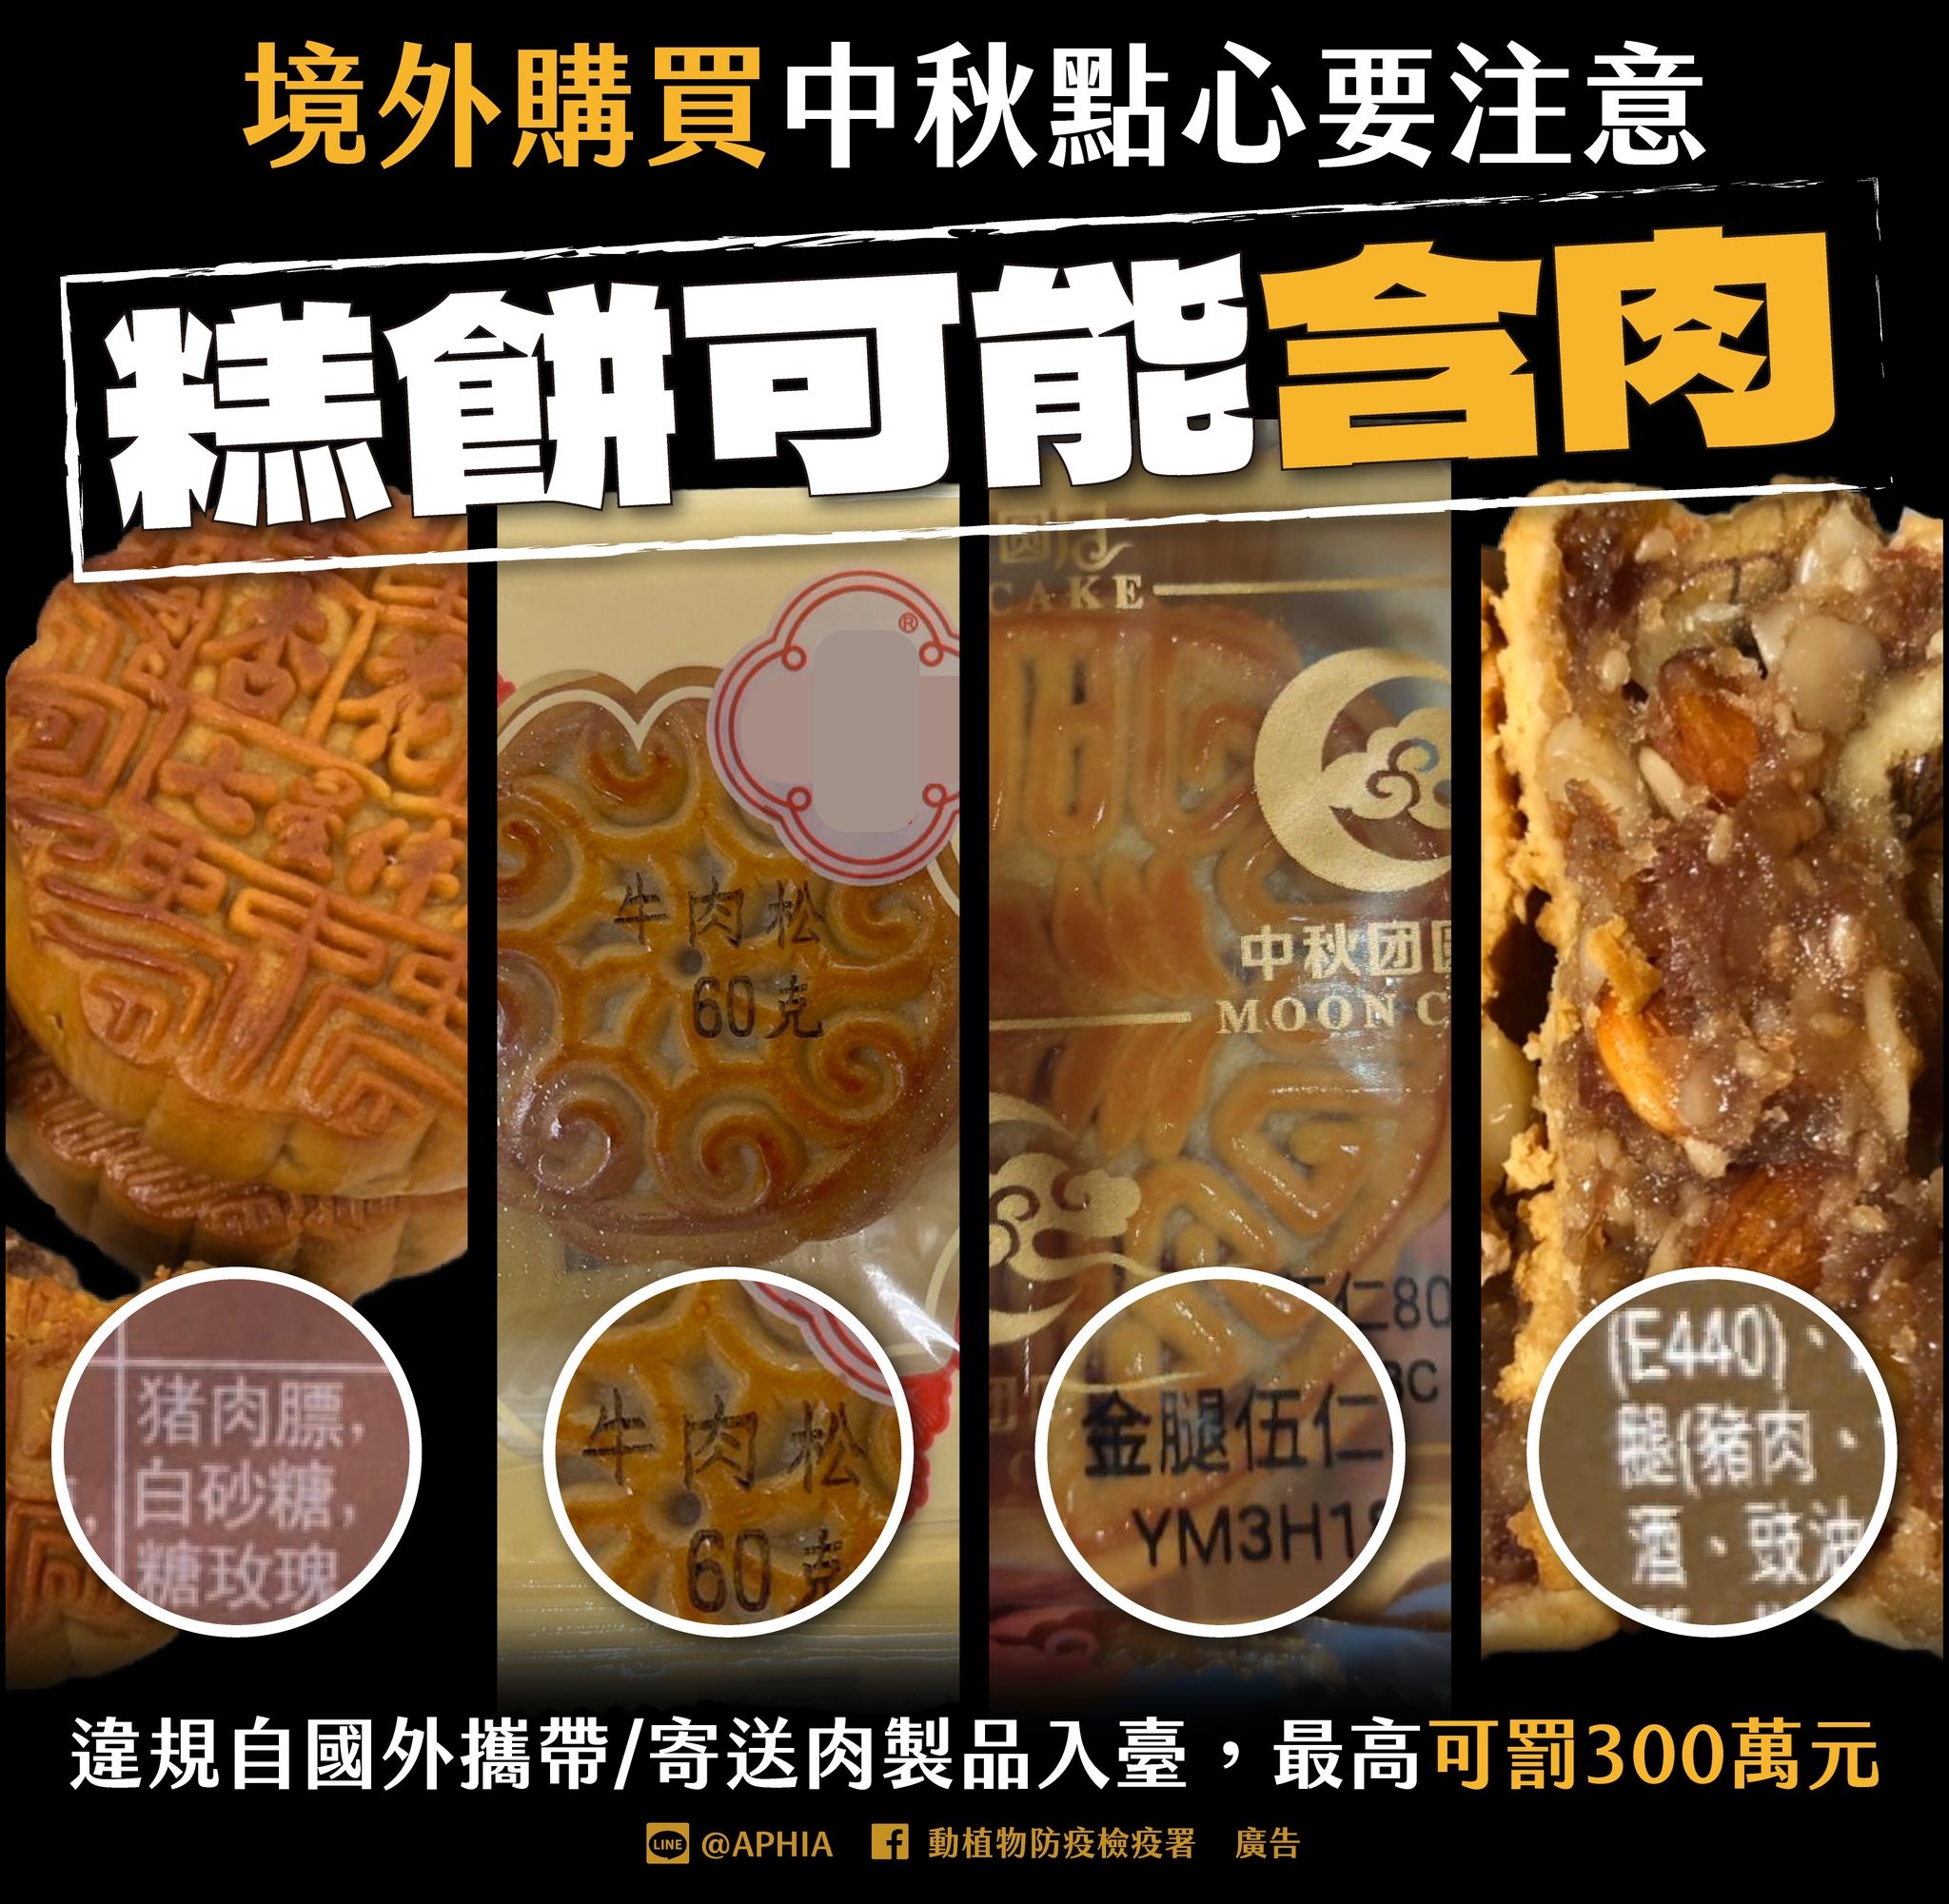 Tuyệt đối không mang theo các sản phẩm có nguồn gốc từ thịt như bánh trung thu nhập cảnh vào Đài Loan để tránh bị phạt. (Ảnh: Lấy từ Facebook Sở Kiểm dịch và Phòng dịch Động thực vật)